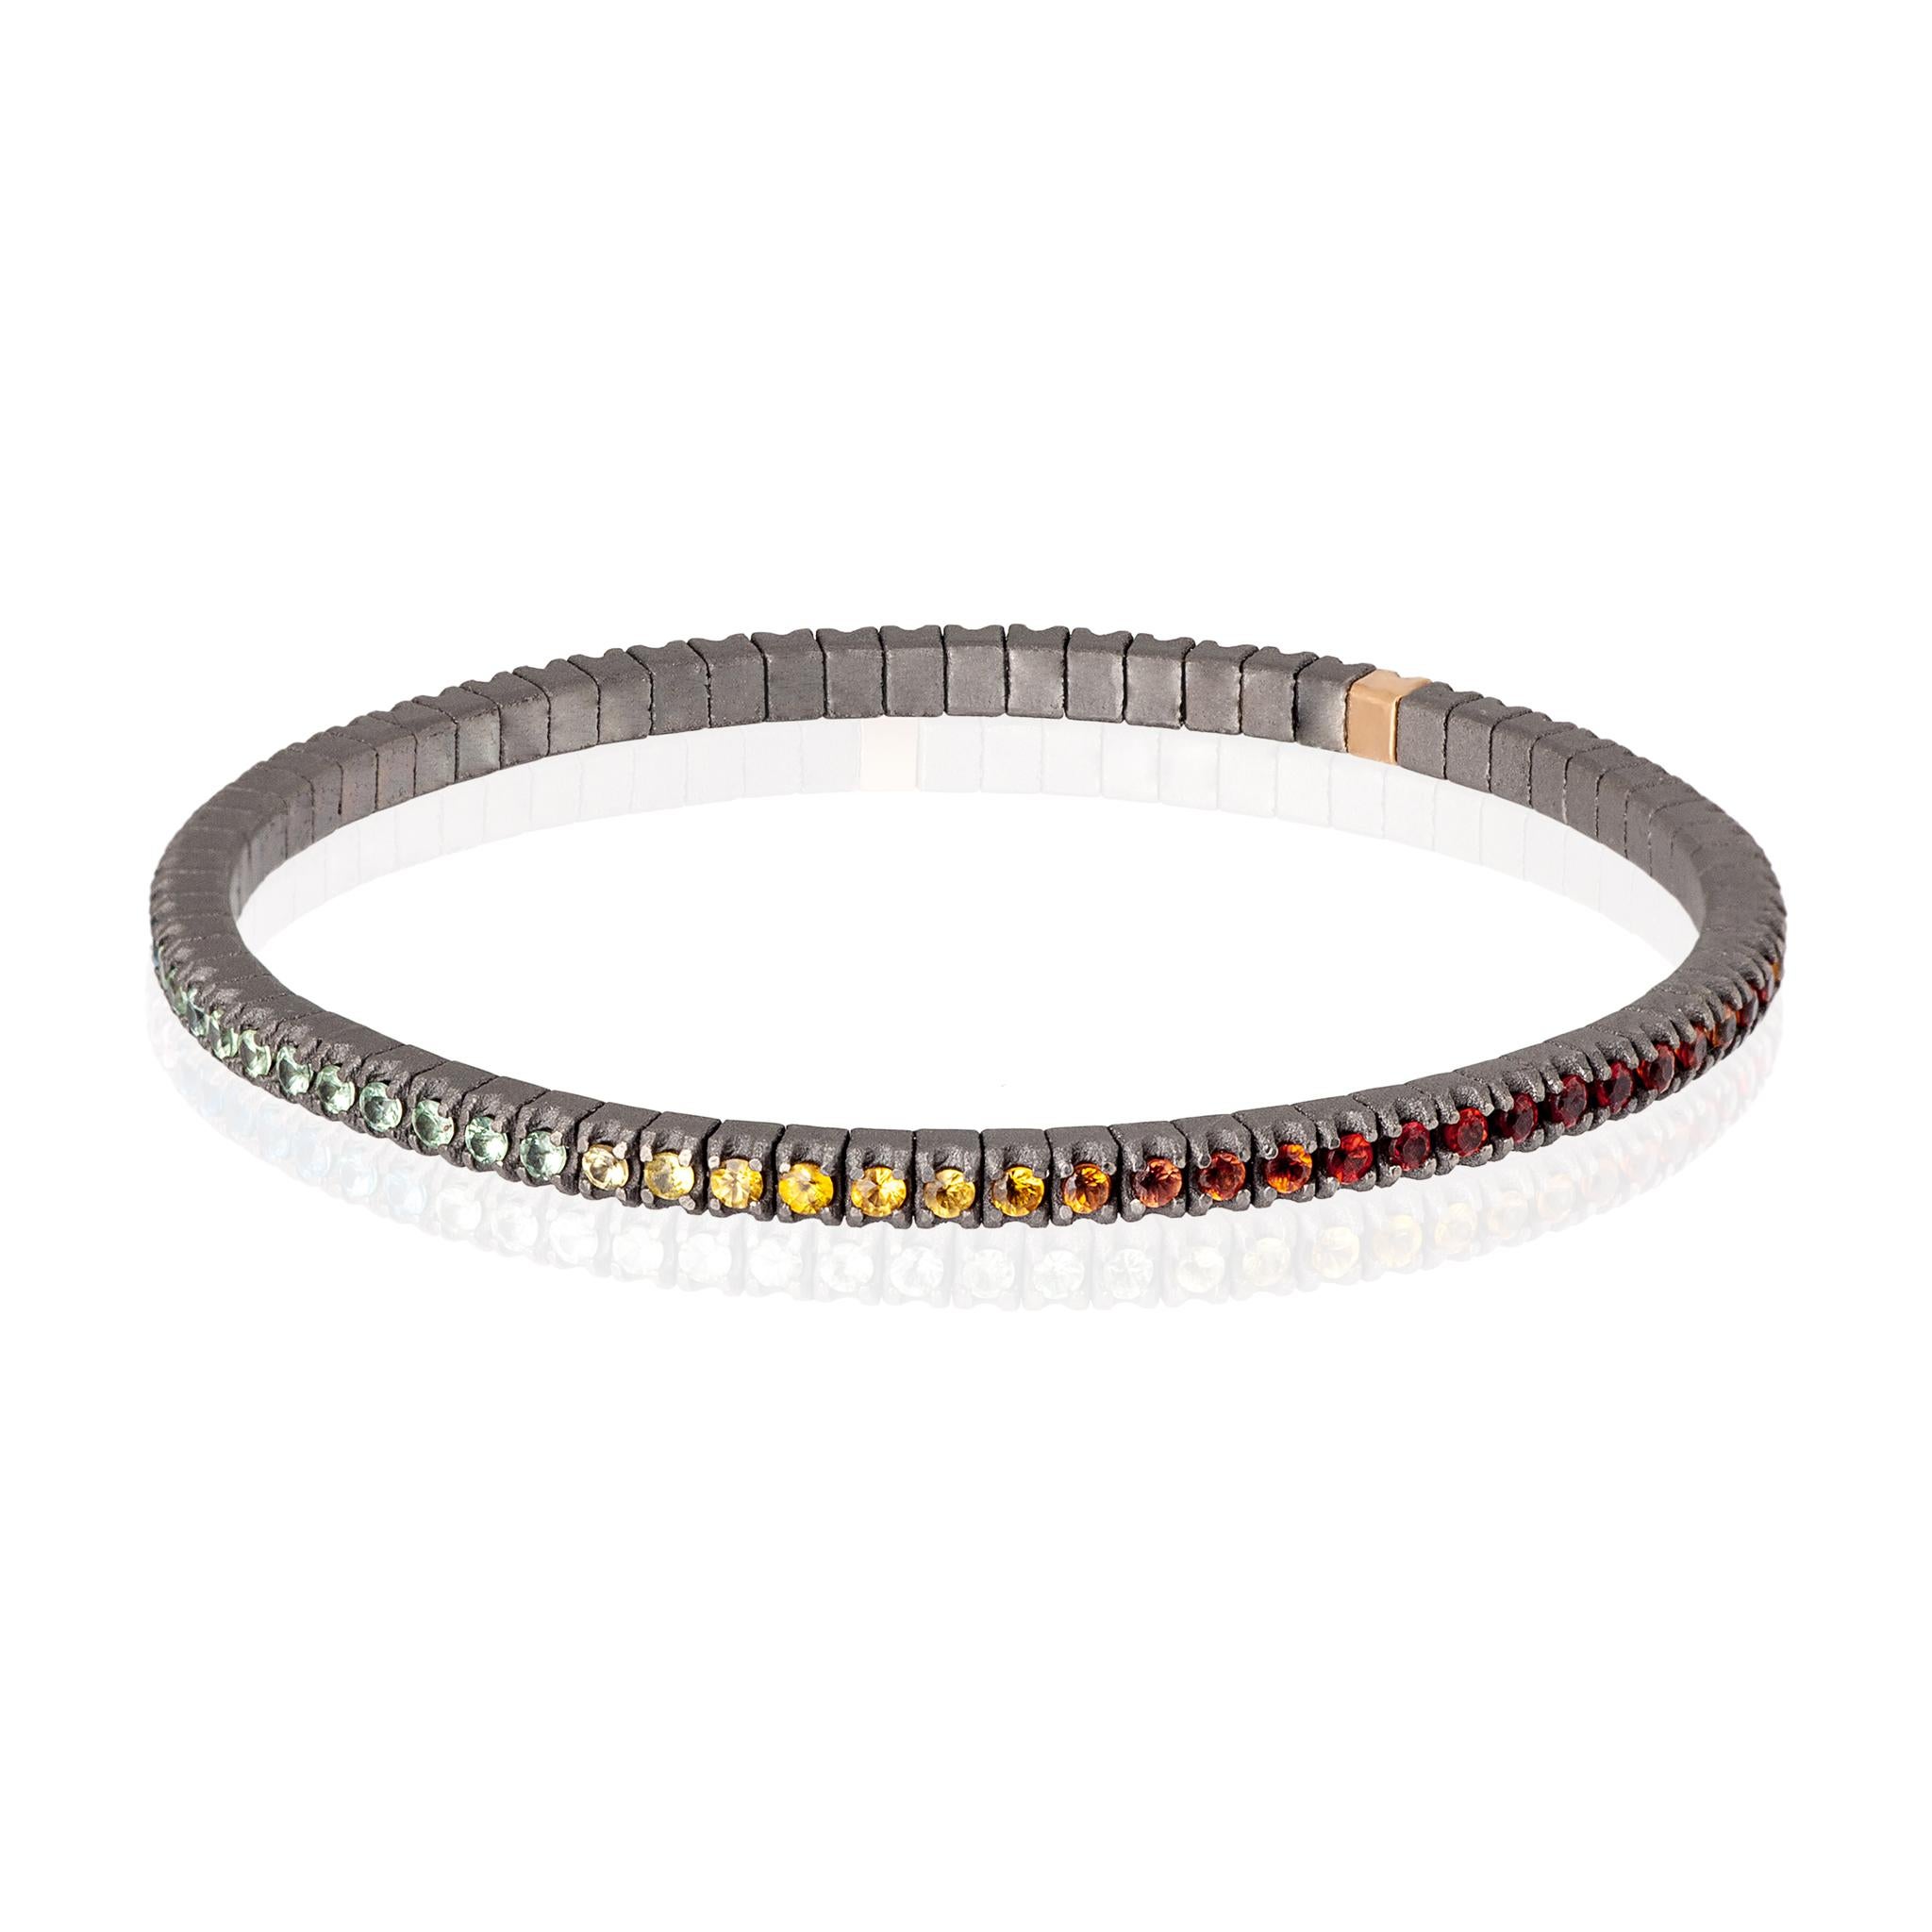 Bracelet Looping pour homme en titane et saphirs multicolores (ct. 2,15 env.). La structure se compose d'une rangée ininterrompue de diamants en 3 points sertis sur des griffes en titane et d'un en or rouge 18kt placés côte à côte sur un lien